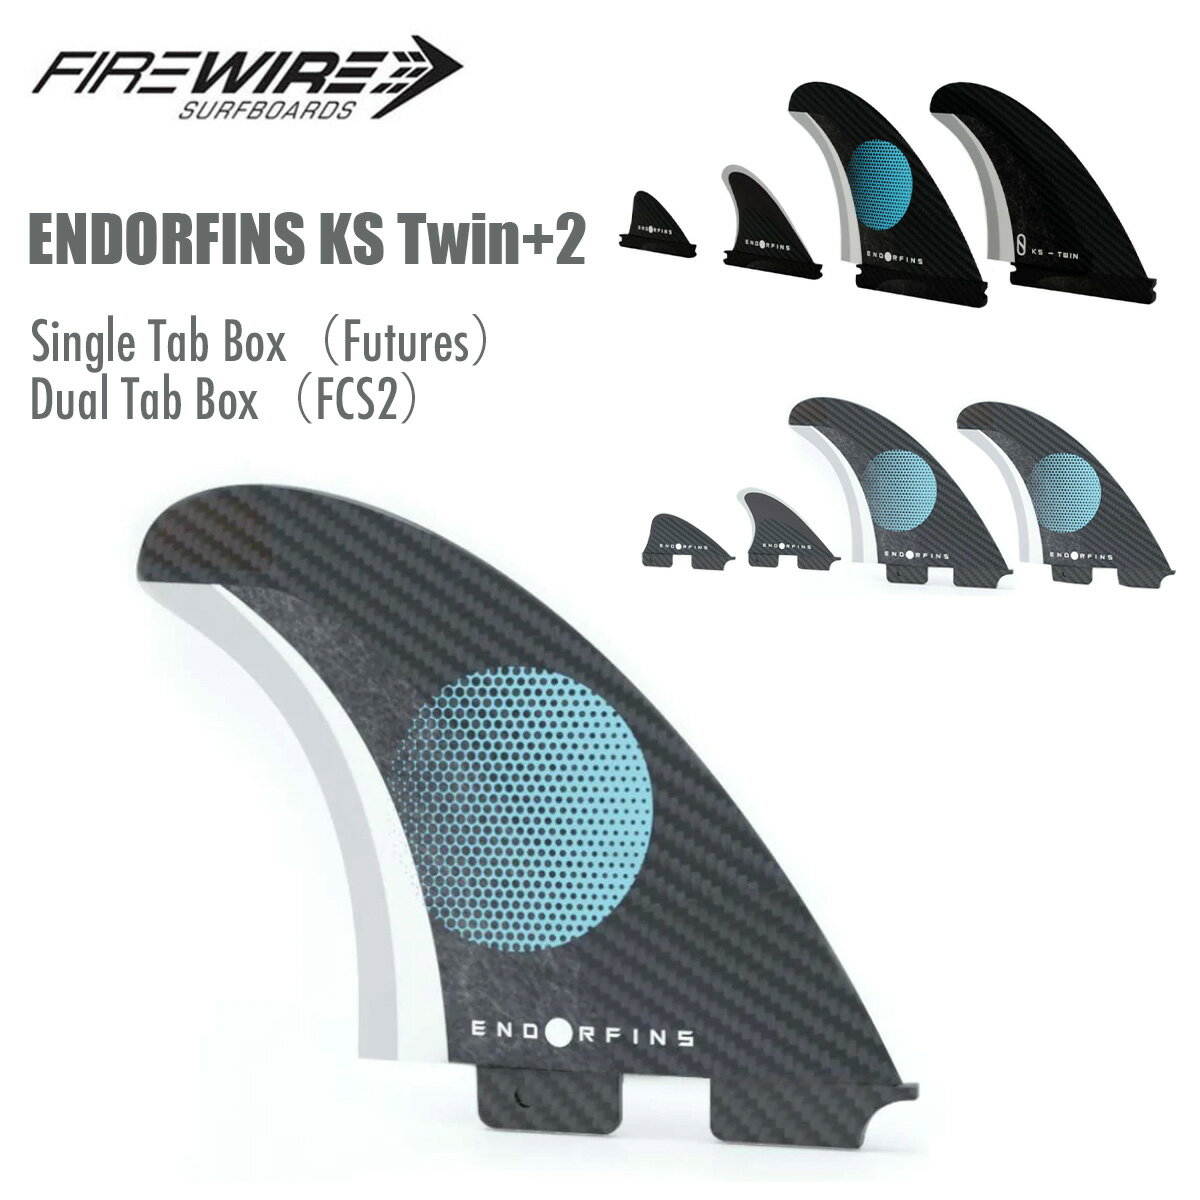 サーフィン フィン ファイヤーワイヤー スレーターデザイン FIREWIRE Slater Designs ENDORFINS KS Twin+2 ツインフィン スタビライザー ナブスター セット 4枚 水に浮く フューチャー用 FCS2用 スクリュー付 フィンキー付 正規品